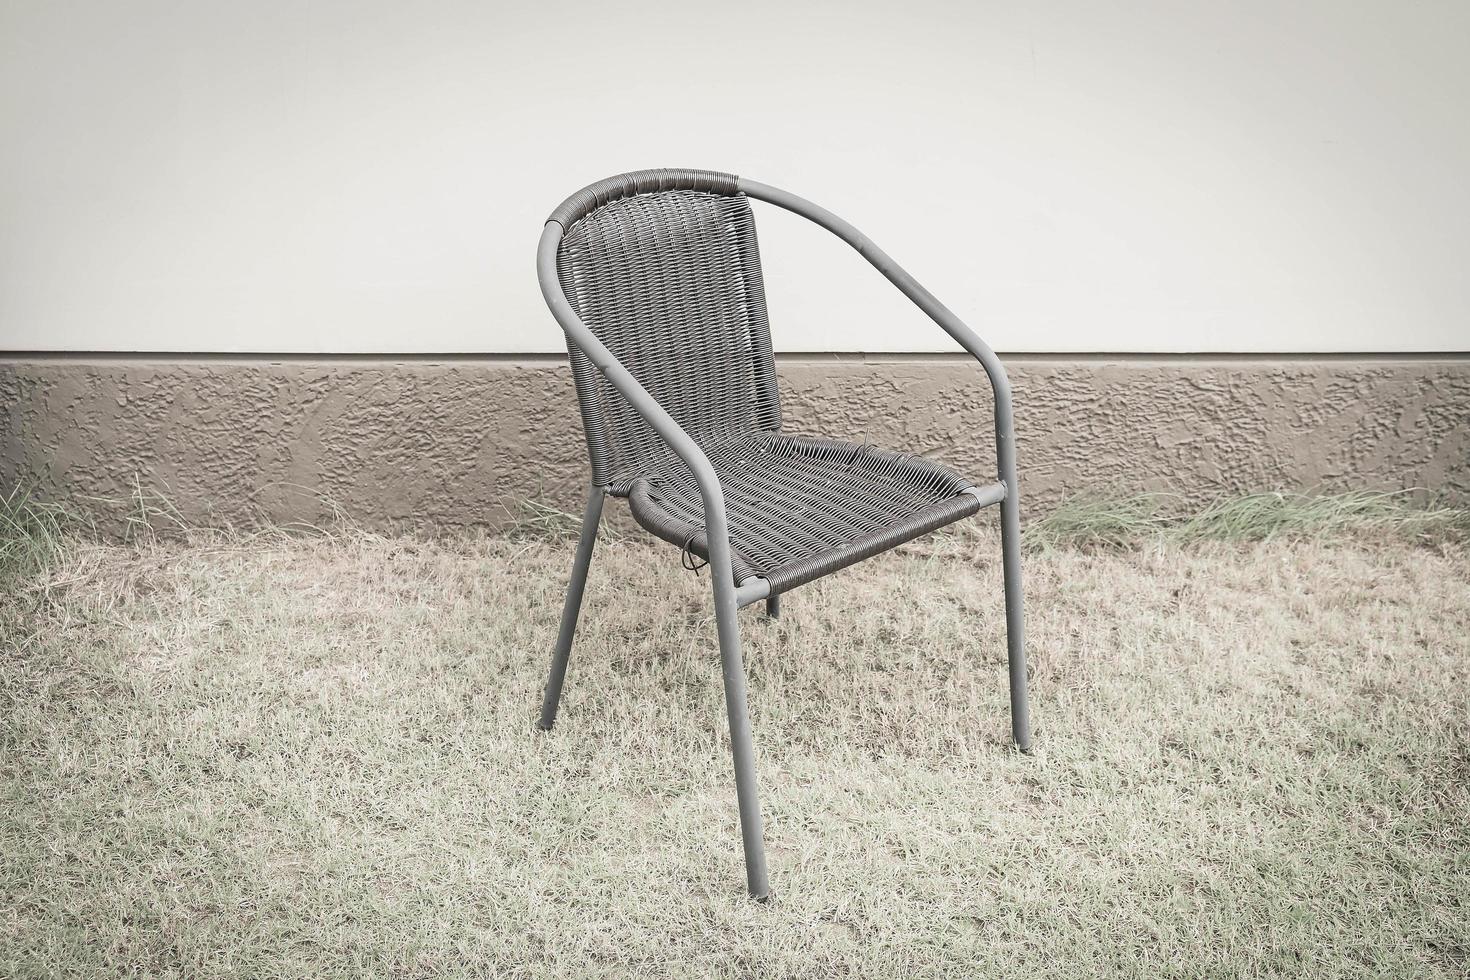 stol med tom vägg för kopieringsutrymme - filter för vintageeffekt foto